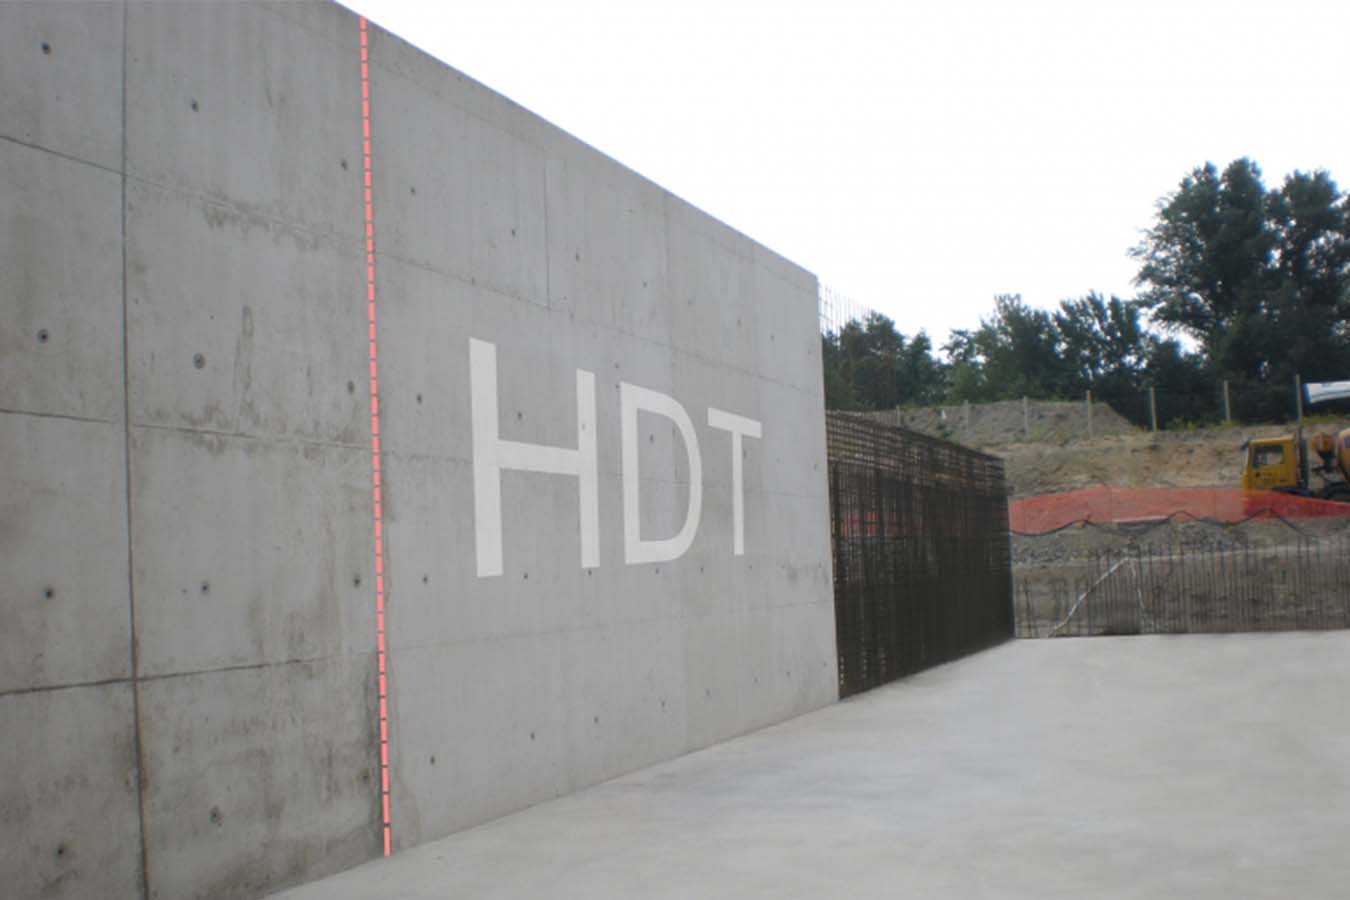 HDT betonadalék, tegye vízzáróvá a betont